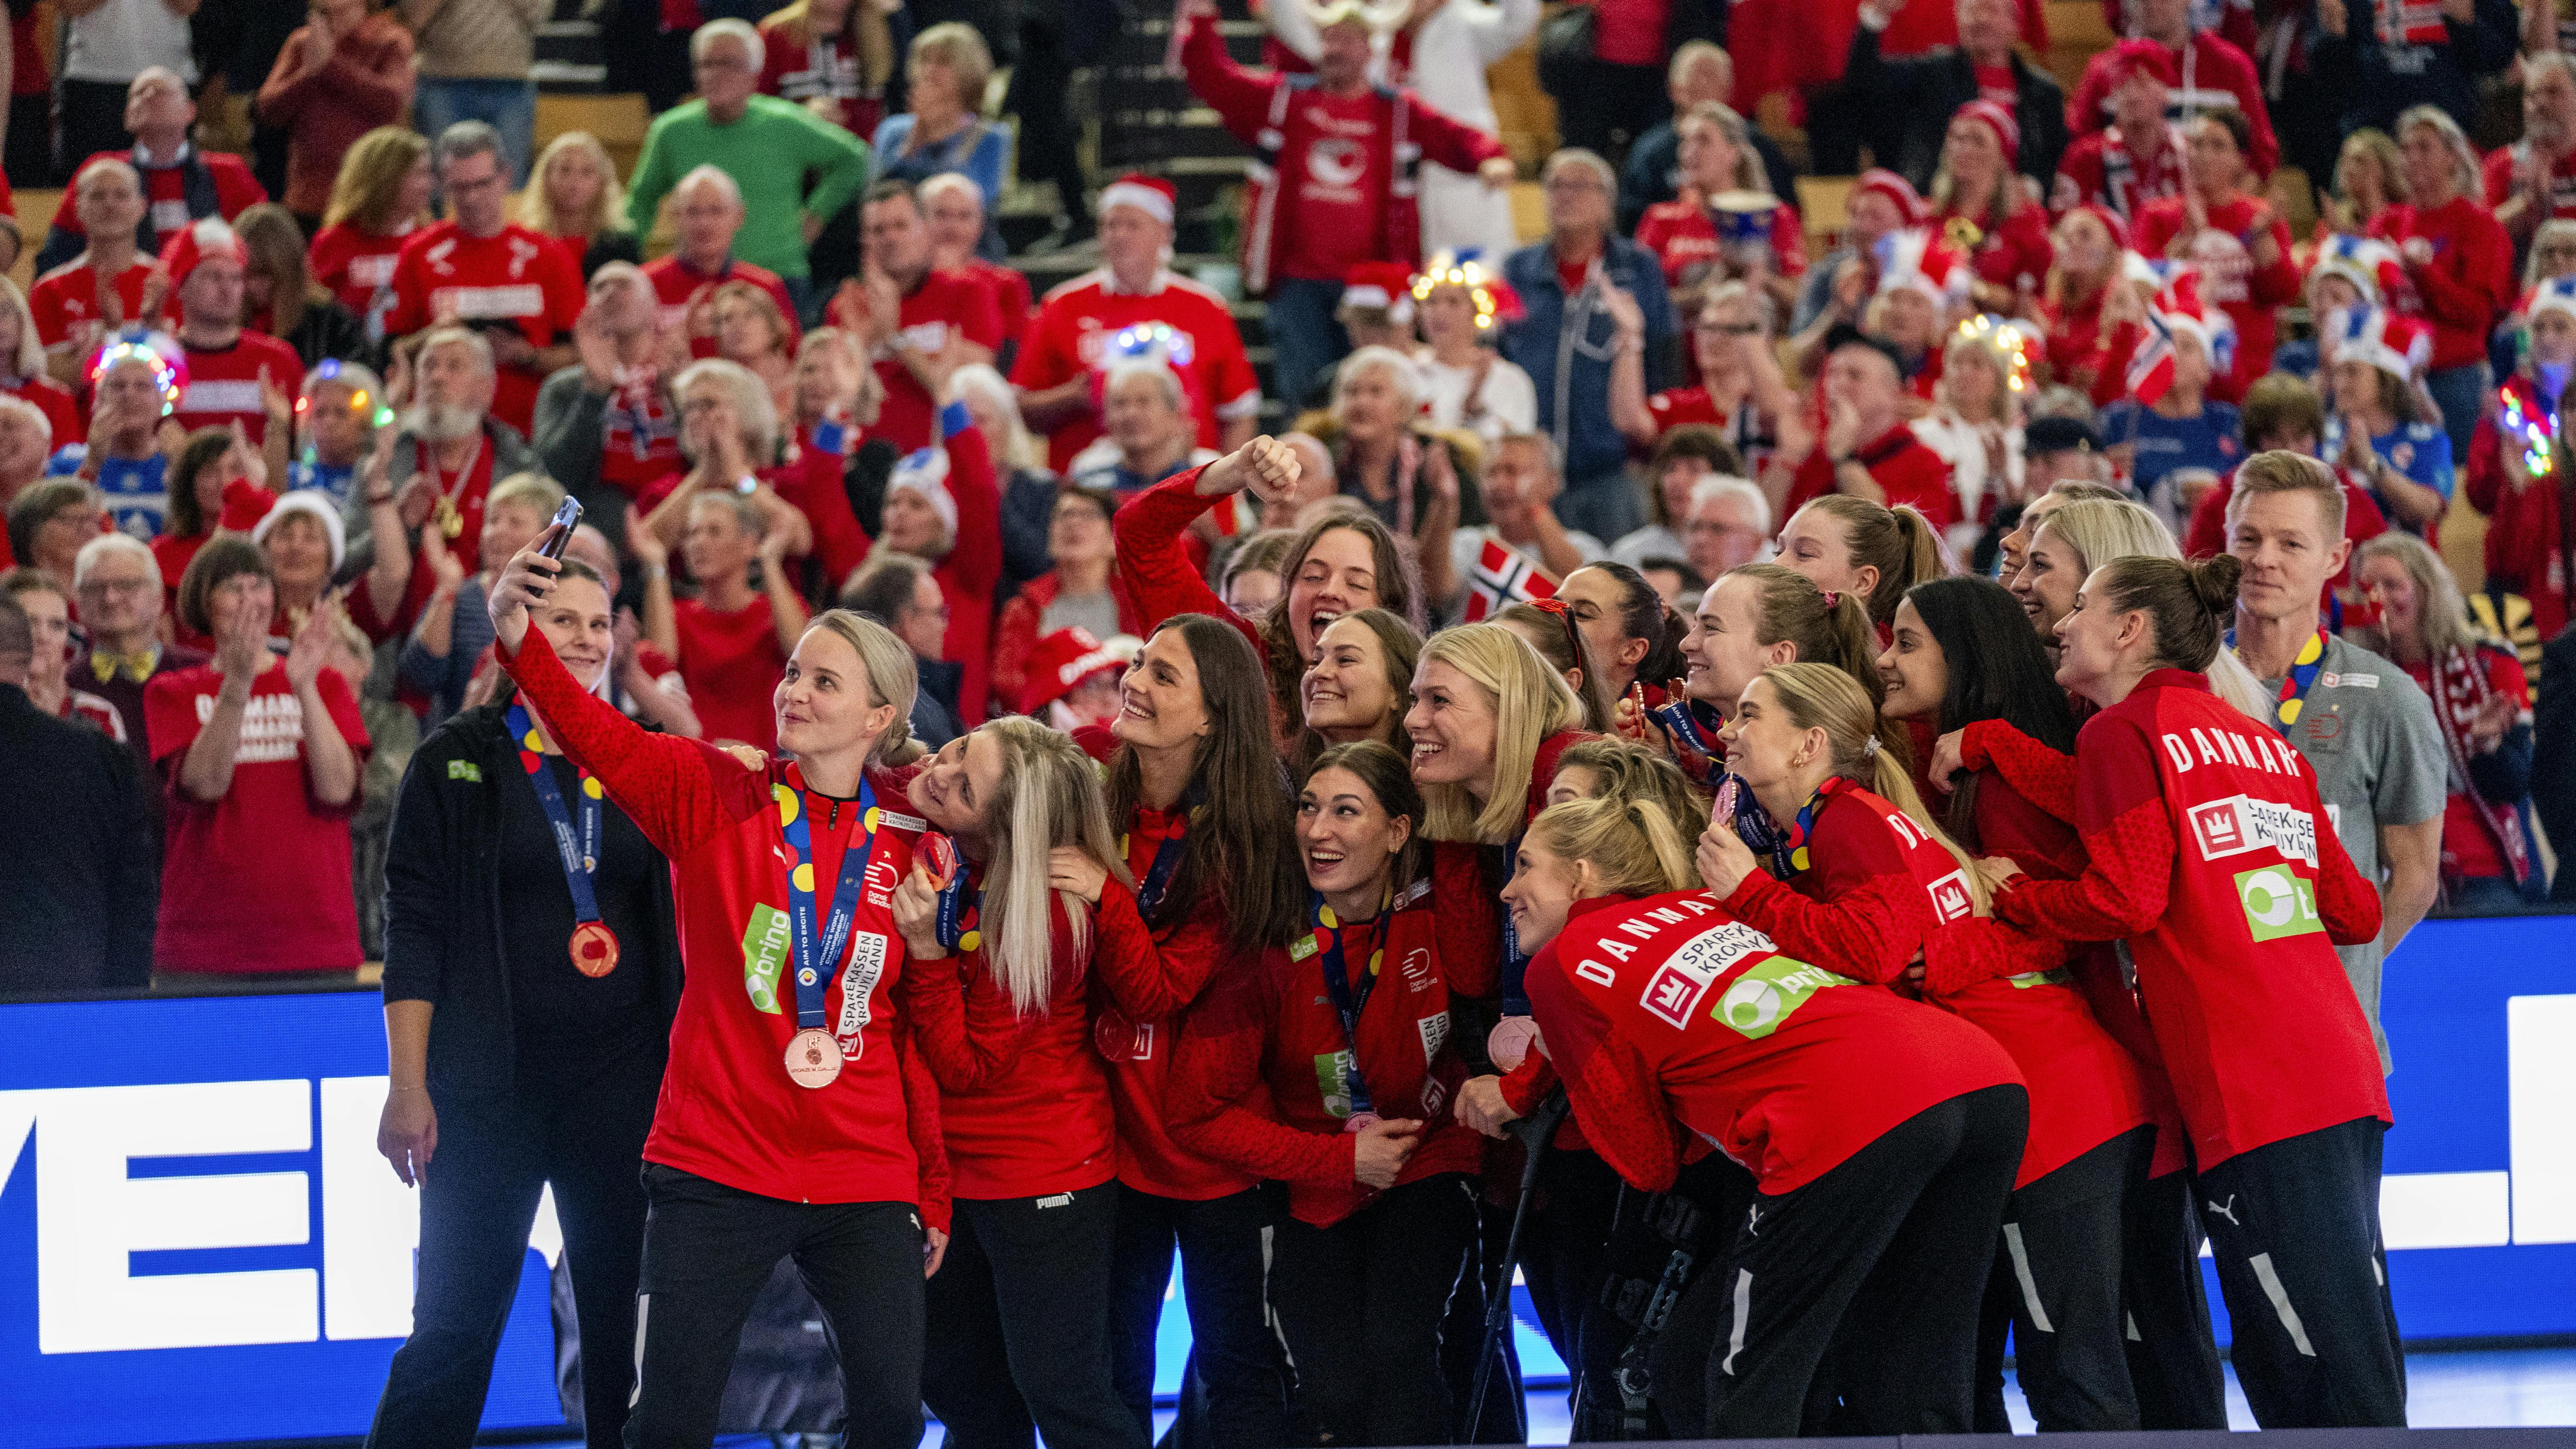 Danmarks EM-gruppe blev torsdag aften fundet. De danske håndboldkvinder møder Færøerne, Kroatien og Schweiz til december.